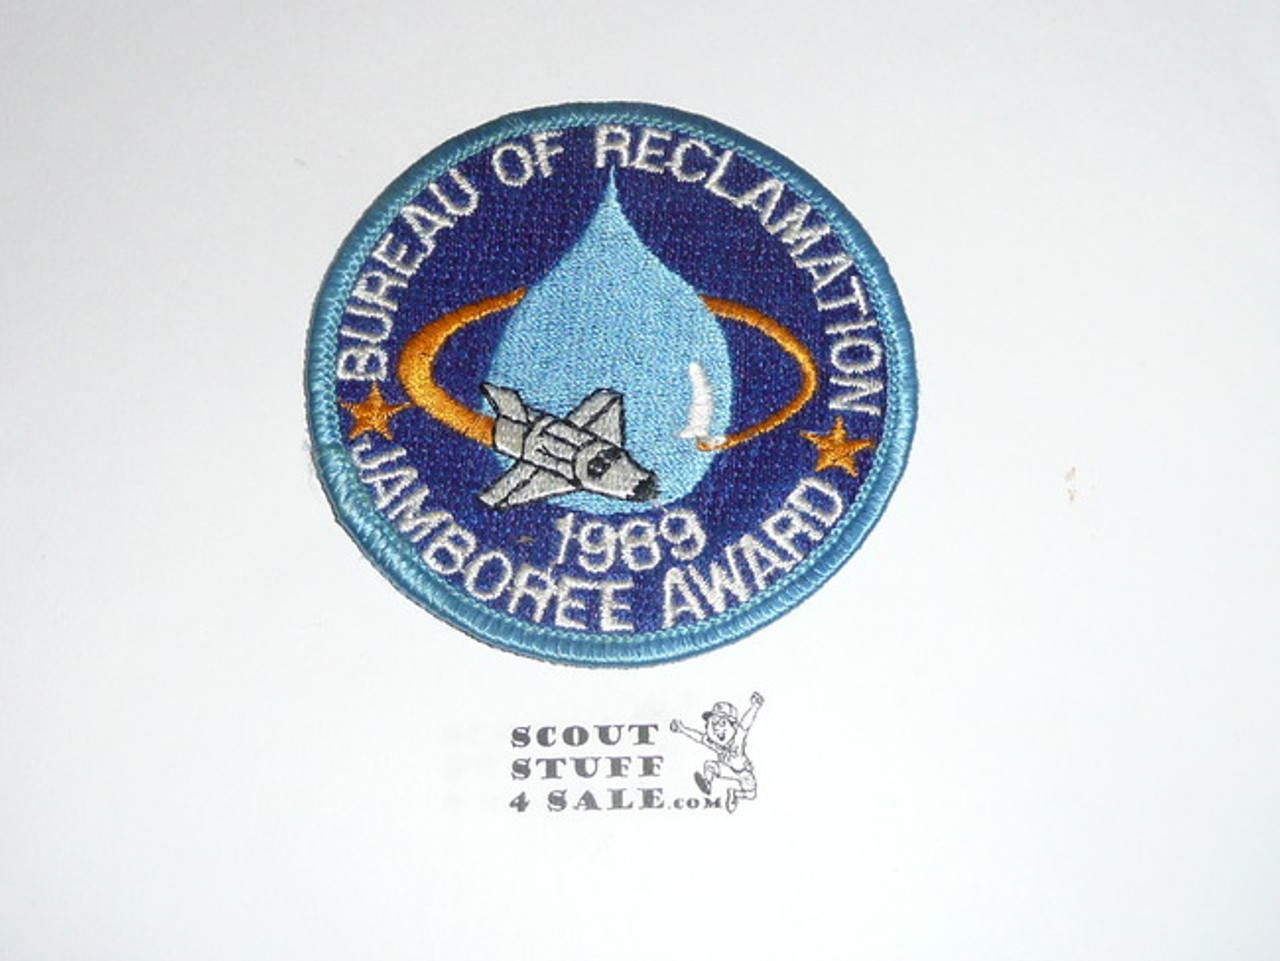 1989 National Jamboree Bureau of Reclamation Patch Jamboree Award